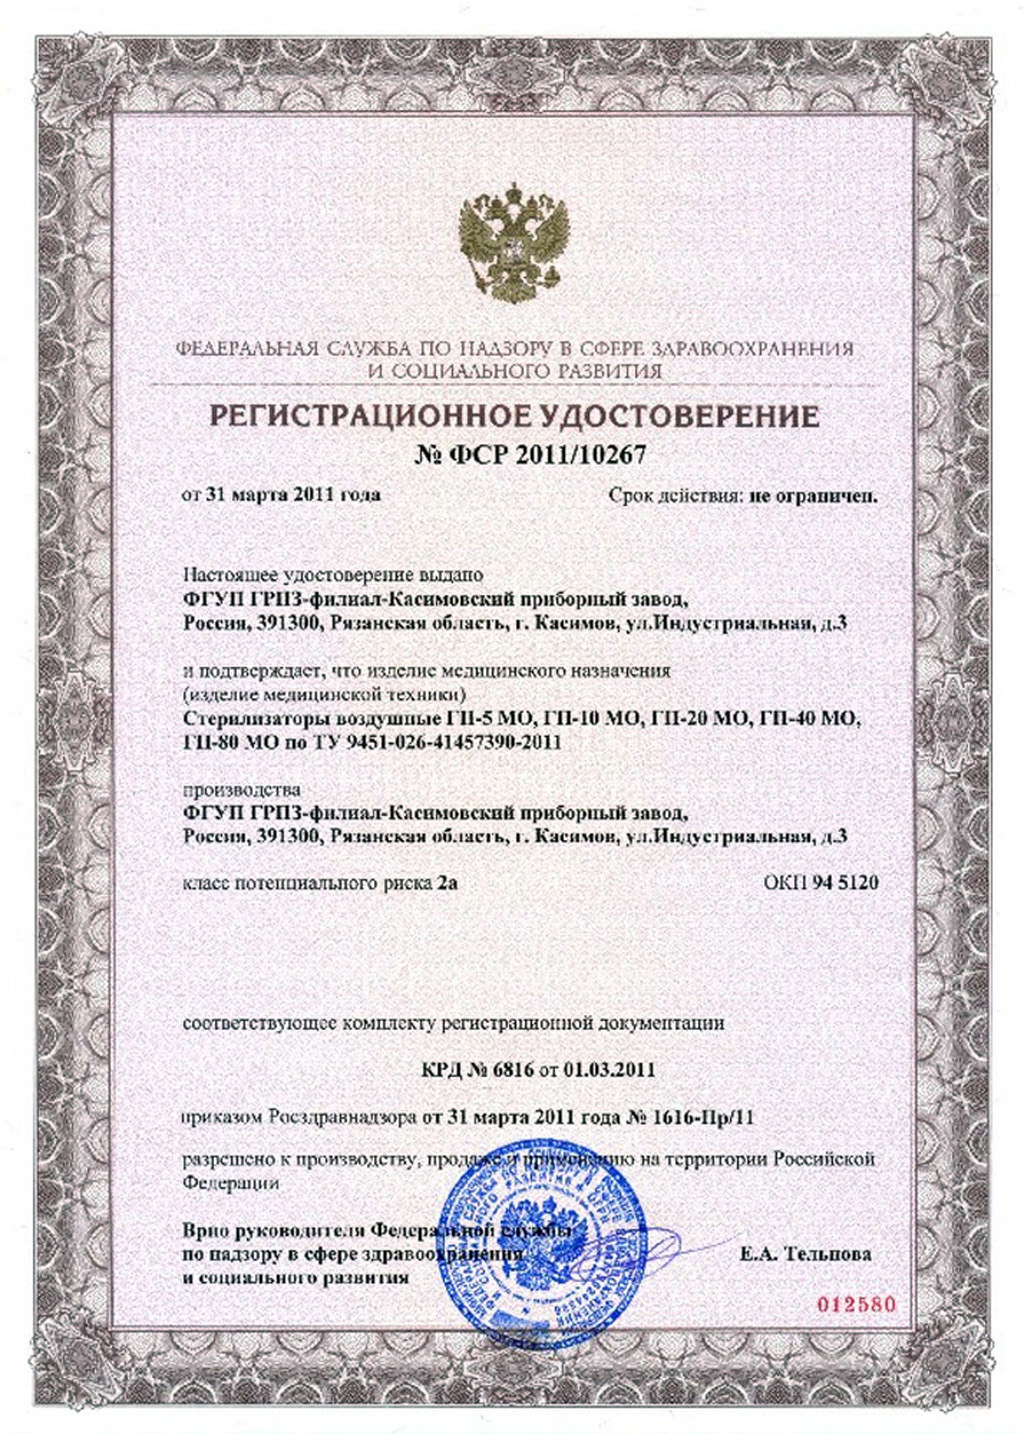 сертификат ГП-5МО, ГП-10МО, ГП-20МО, ГП-40МО, ГП-80МО Стерилизаторы воздушные